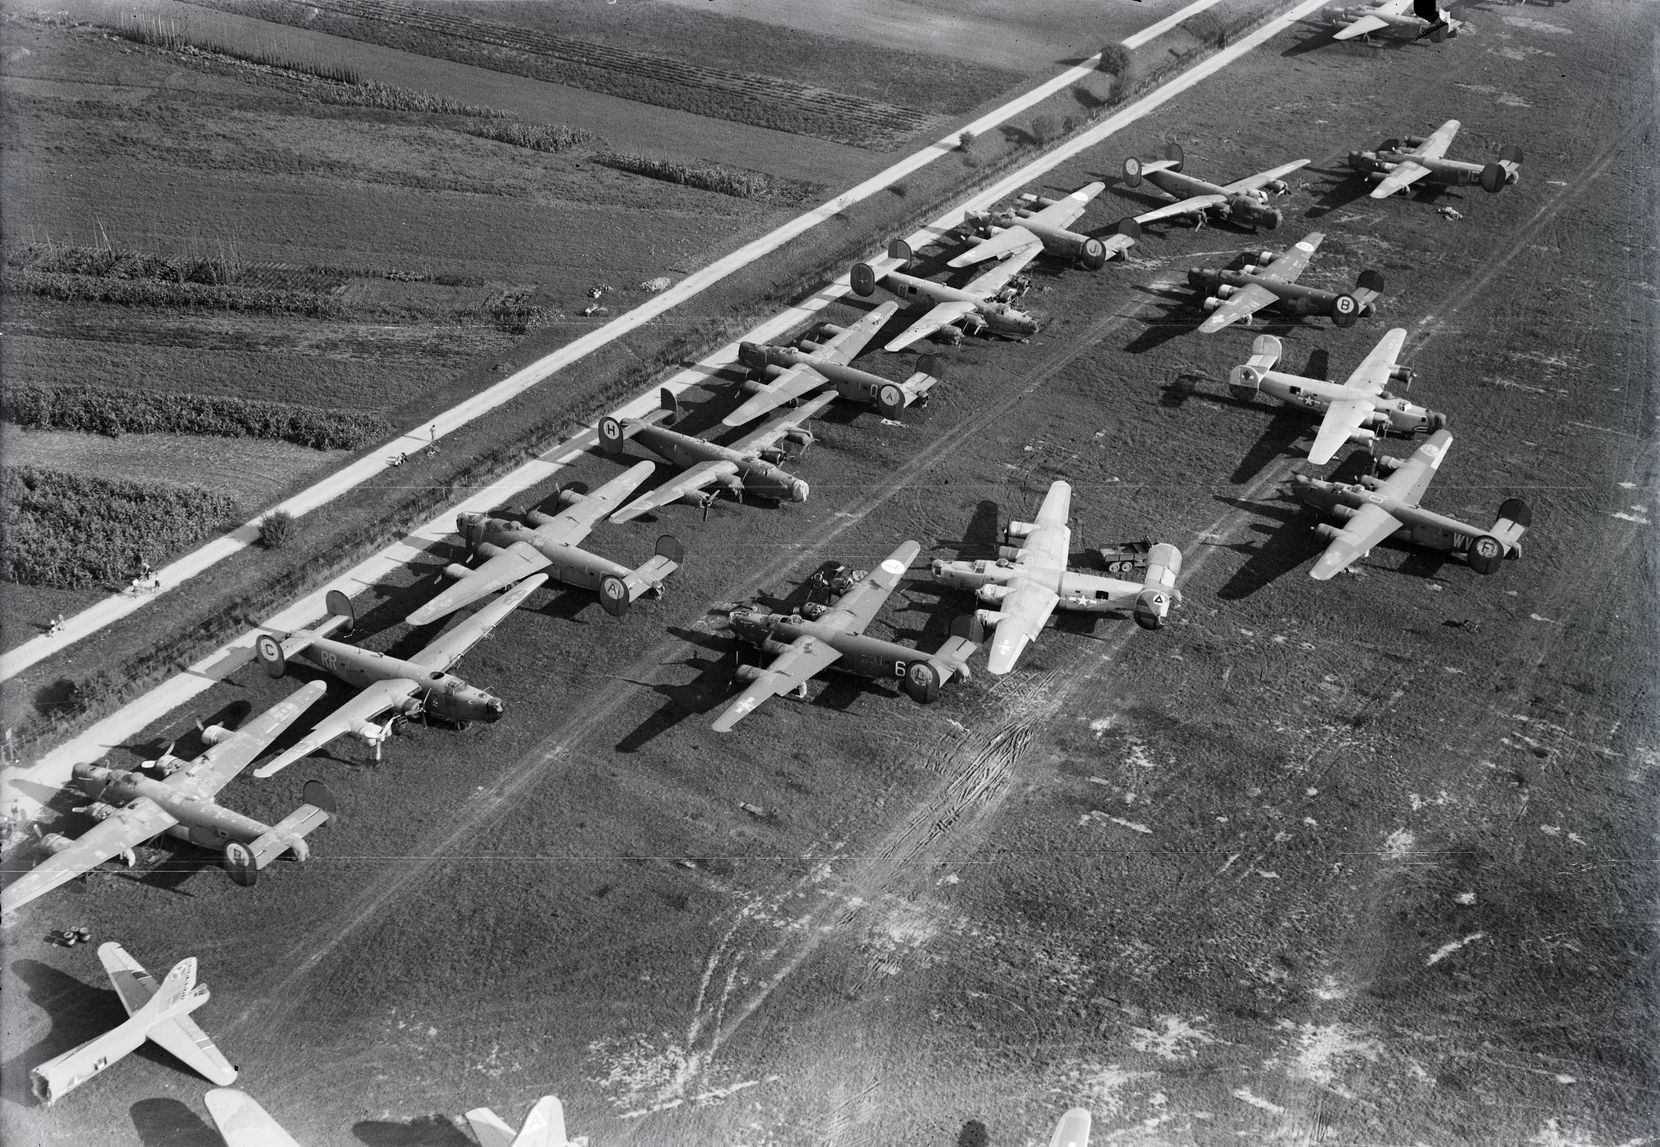 Schwarz-weiss-Aufnahme zahlreicher Militärflugzeuge.